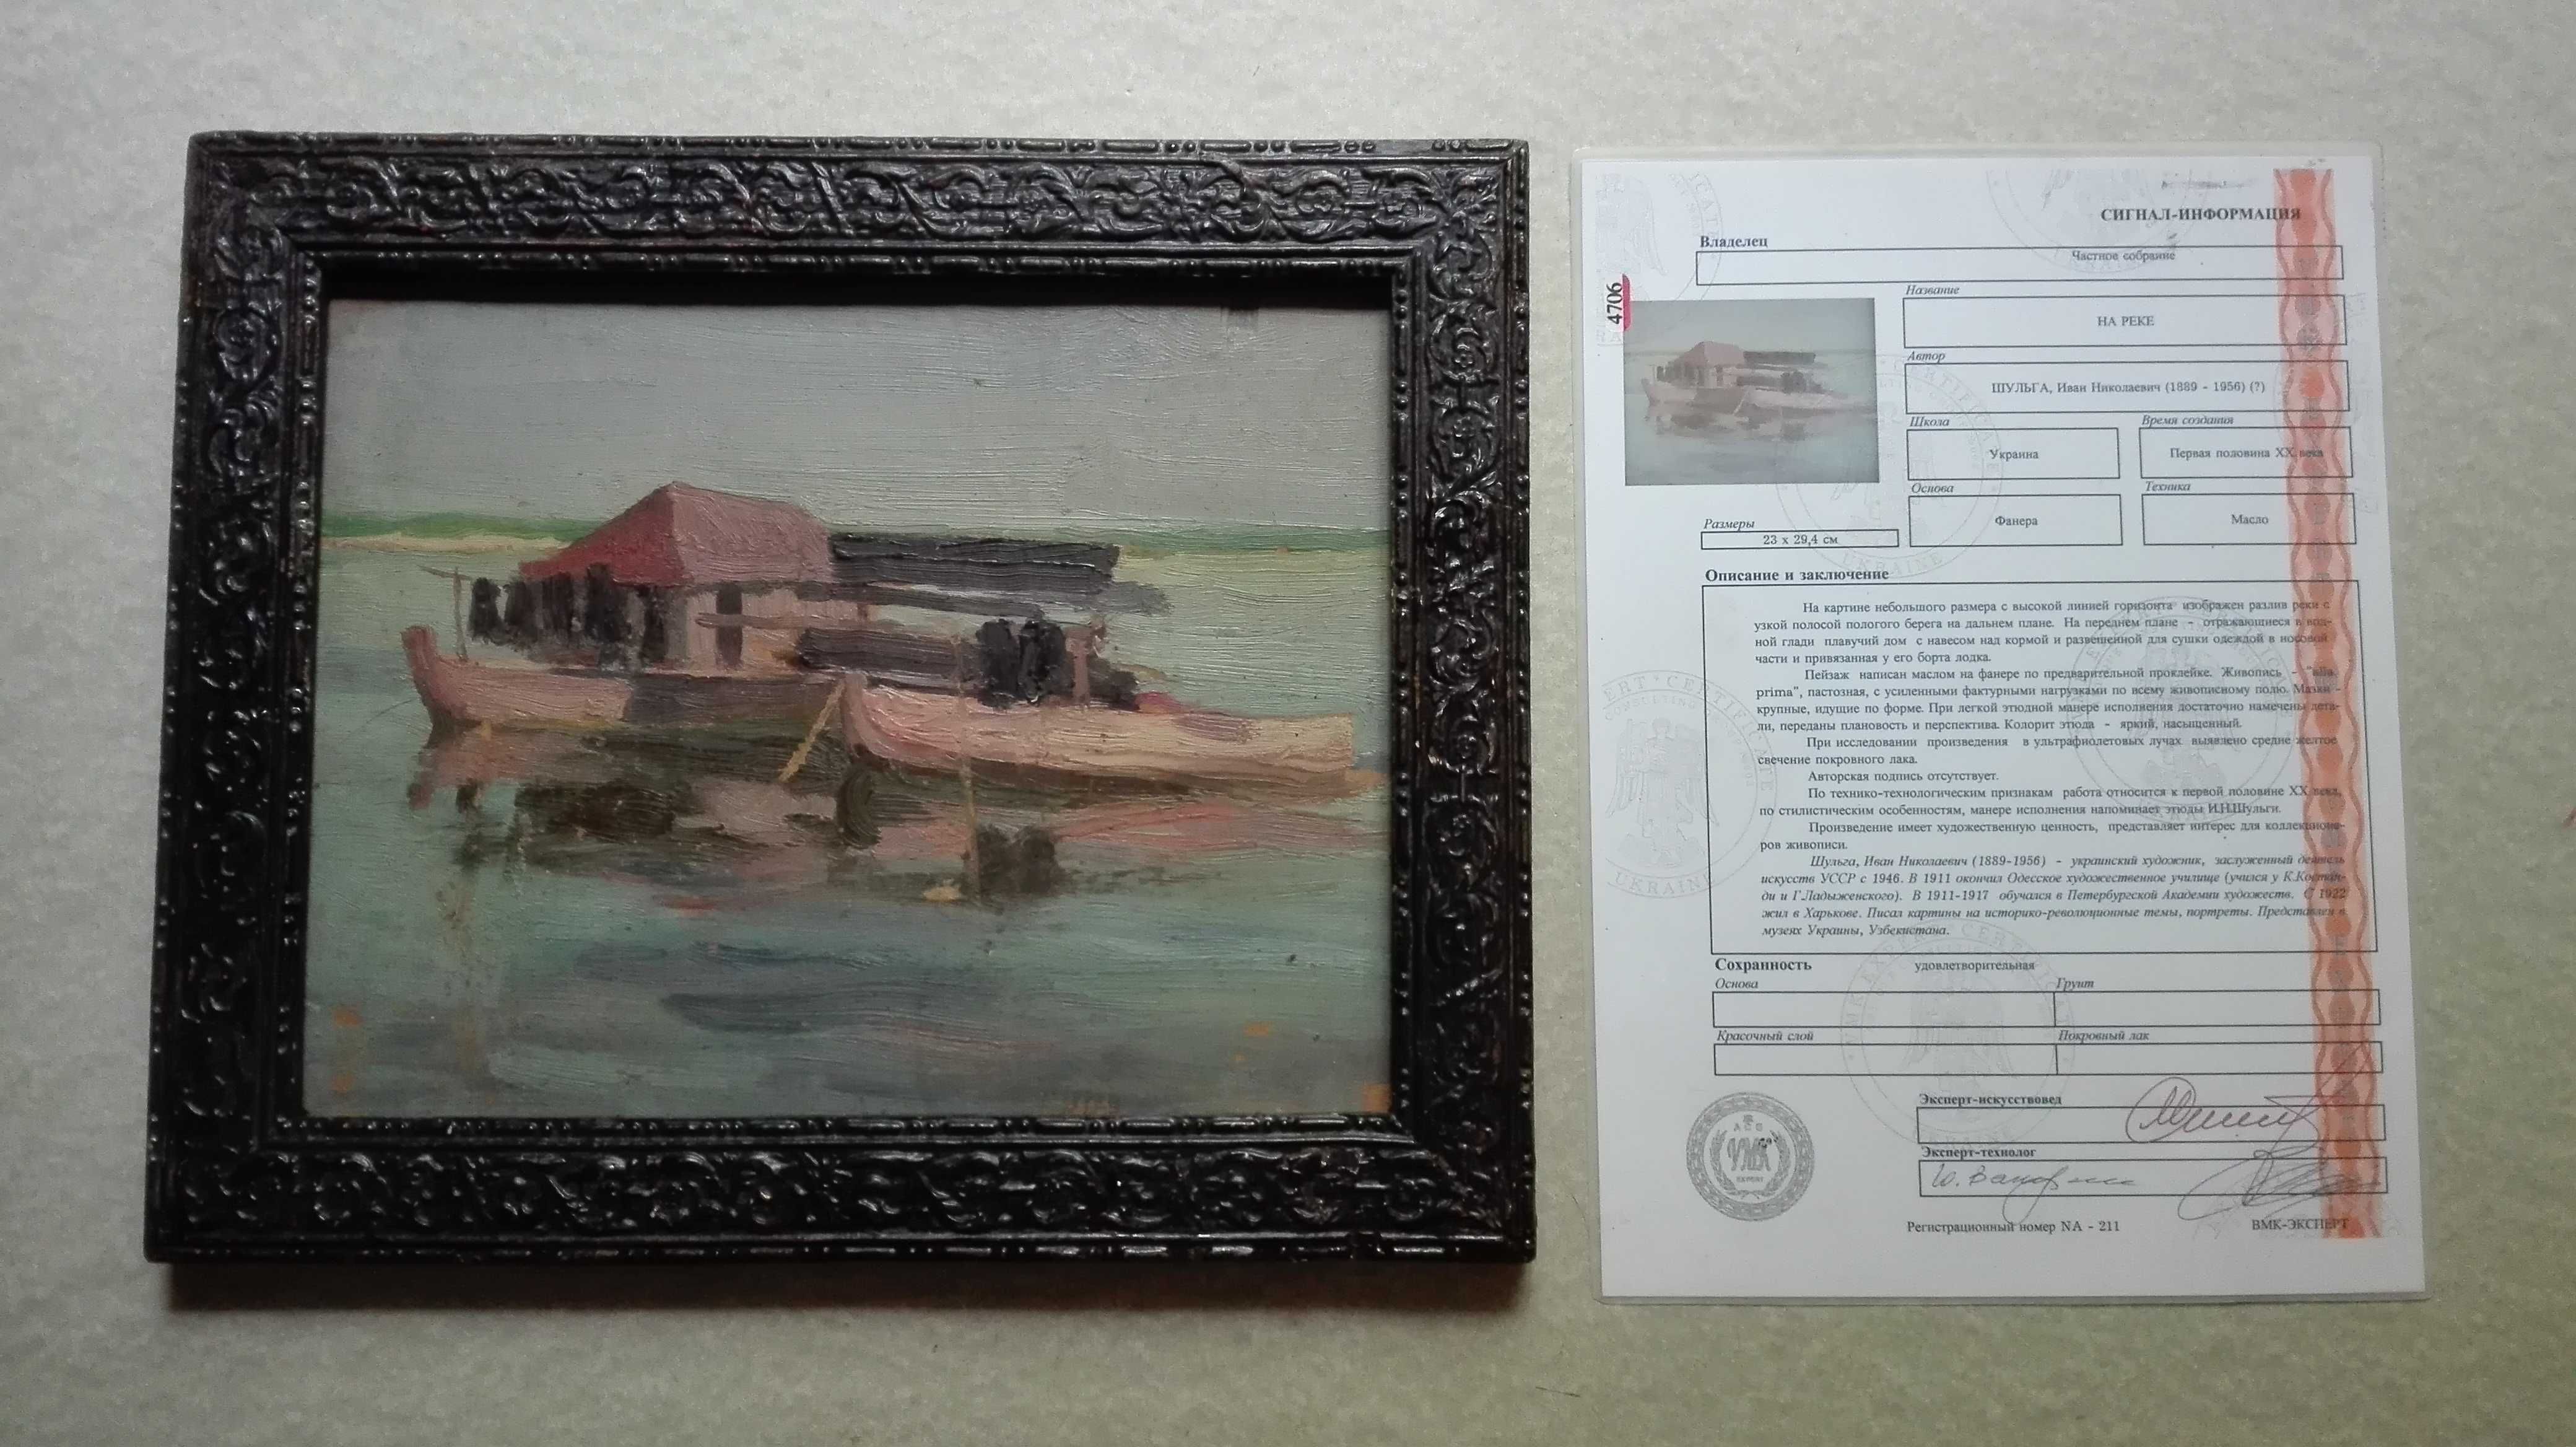 Плавучий домик на реке Иван Шульга (1889-1956гг) пейзаж с сертификатом